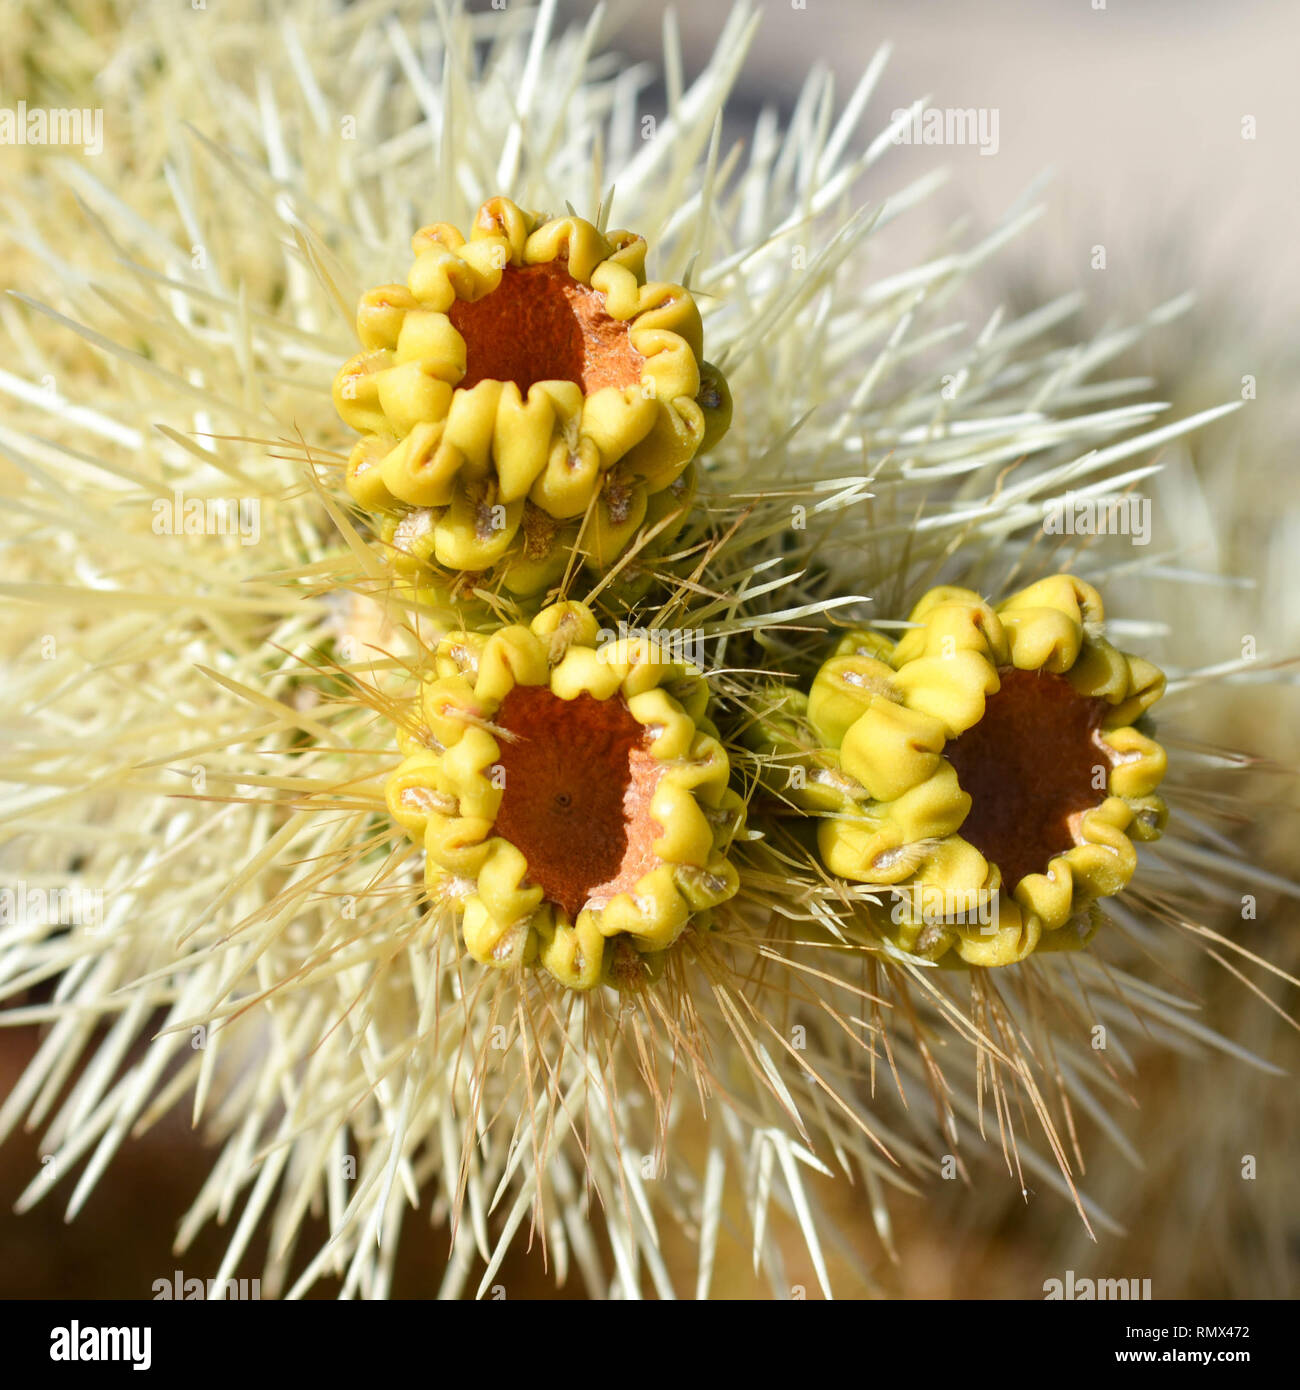 Drei Früchte am Ende eines Teddybären cholla Cactus Niederlassung, Joshua Tree National Park, Kalifornien, USA Stockfoto